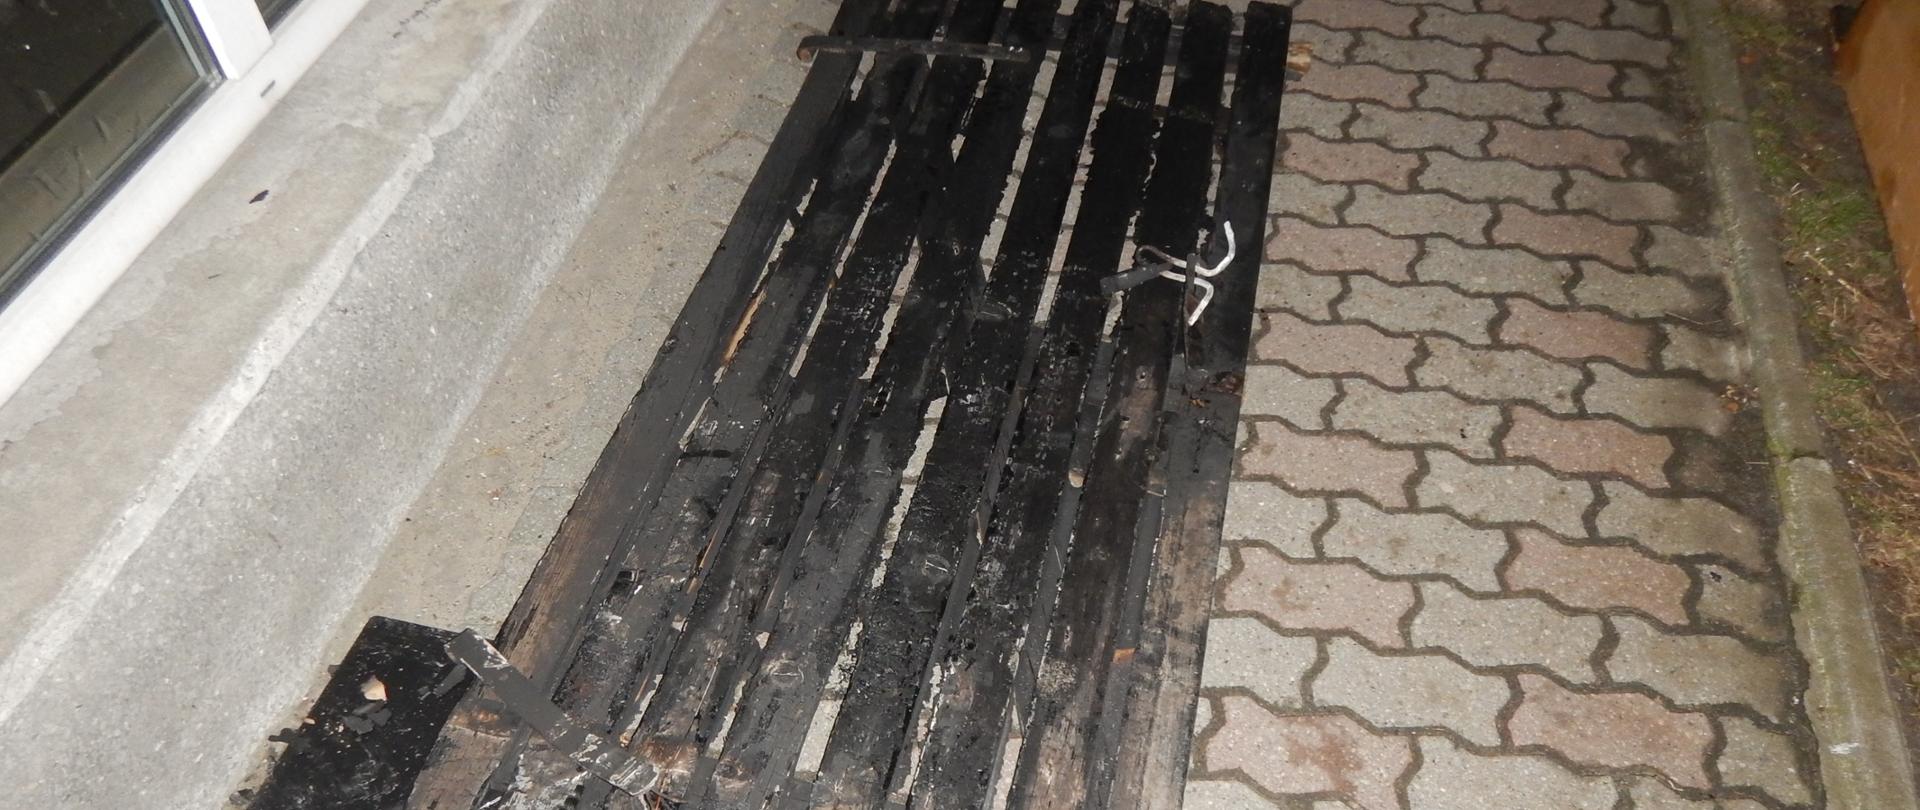 Zdjęcie przedstawia spalone drzwi.